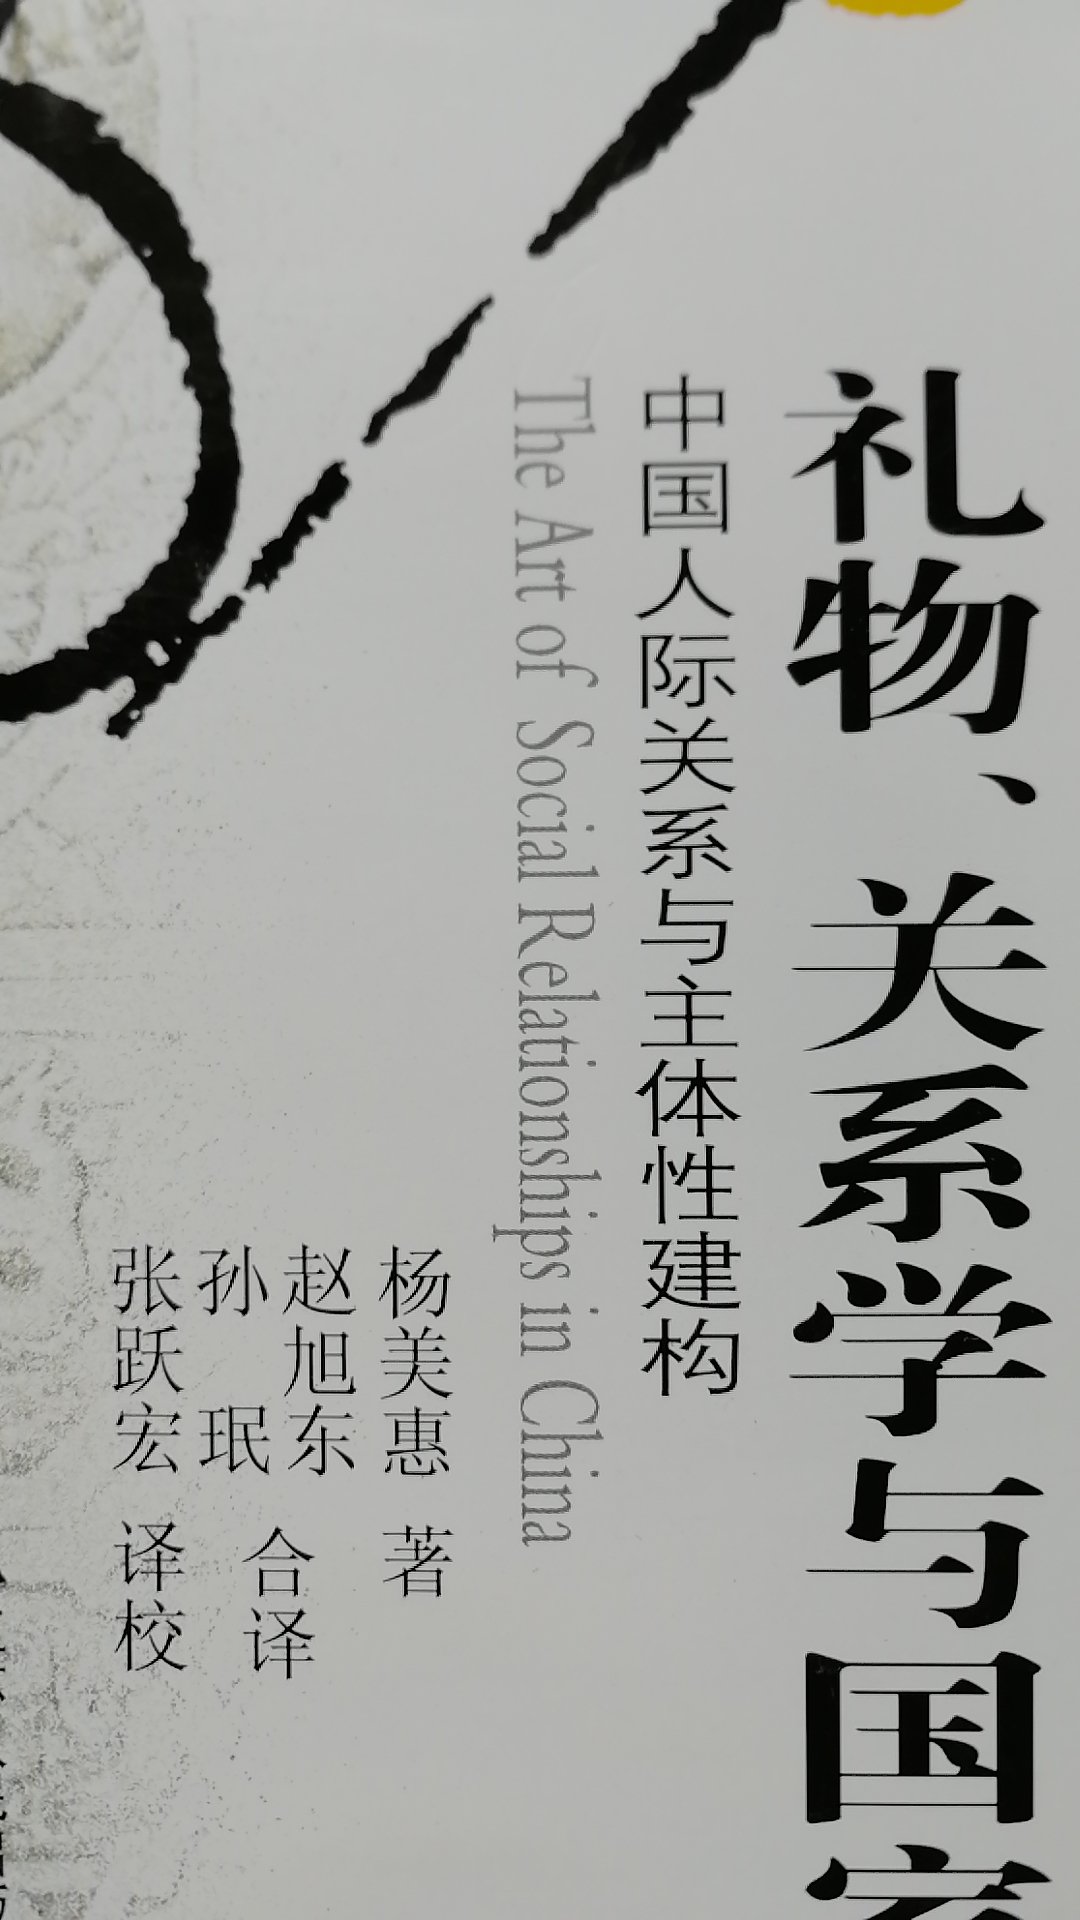 《礼物、关系学与国家》一书对中国人际关系的建构的分析独到。